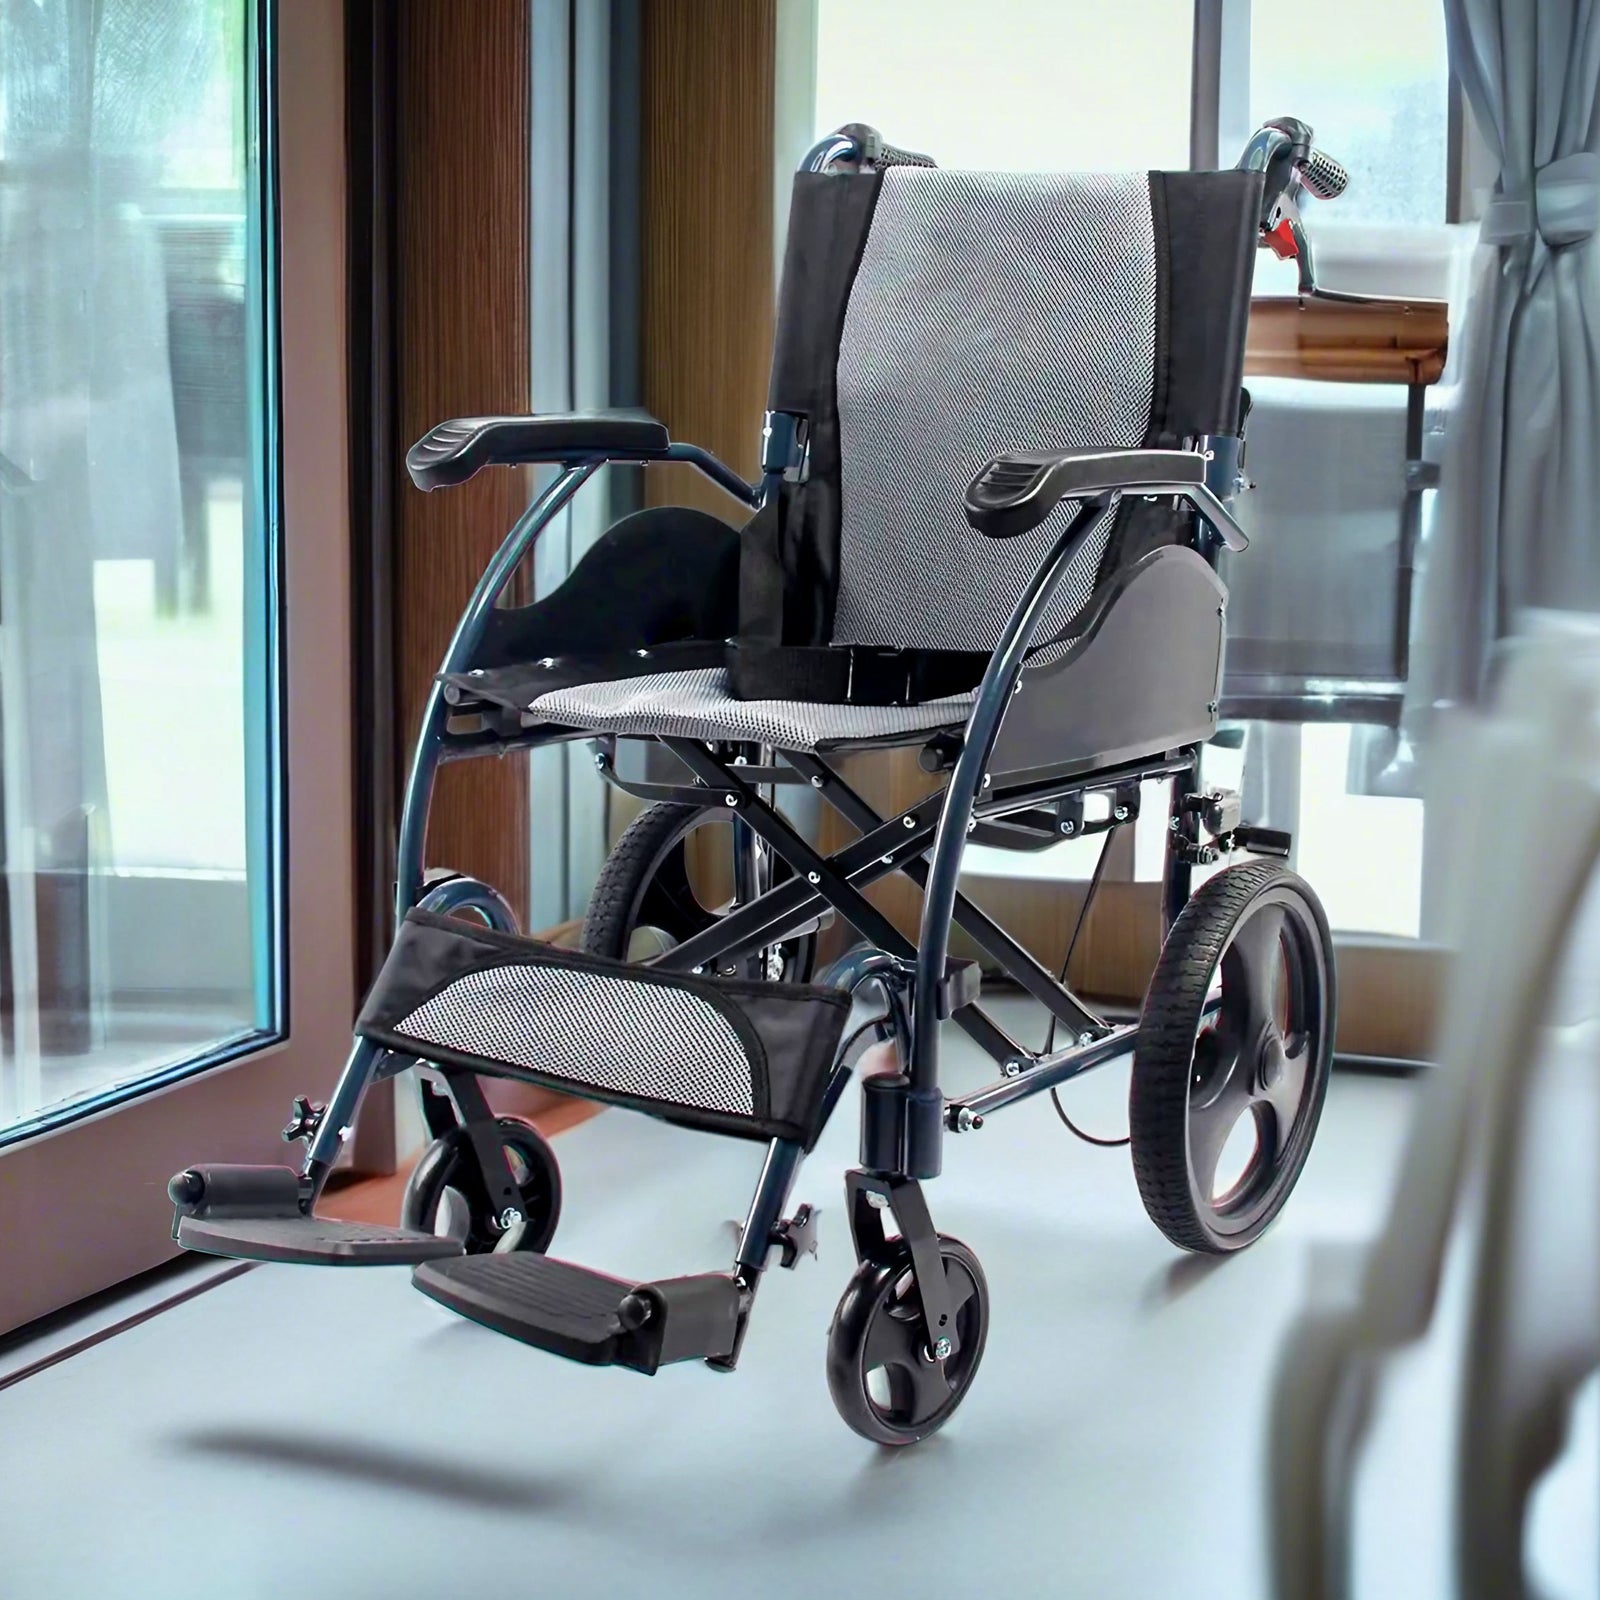 Care-Parents 介助用車椅子 折りたたみ車椅子 背折れタイプ アルミ製 